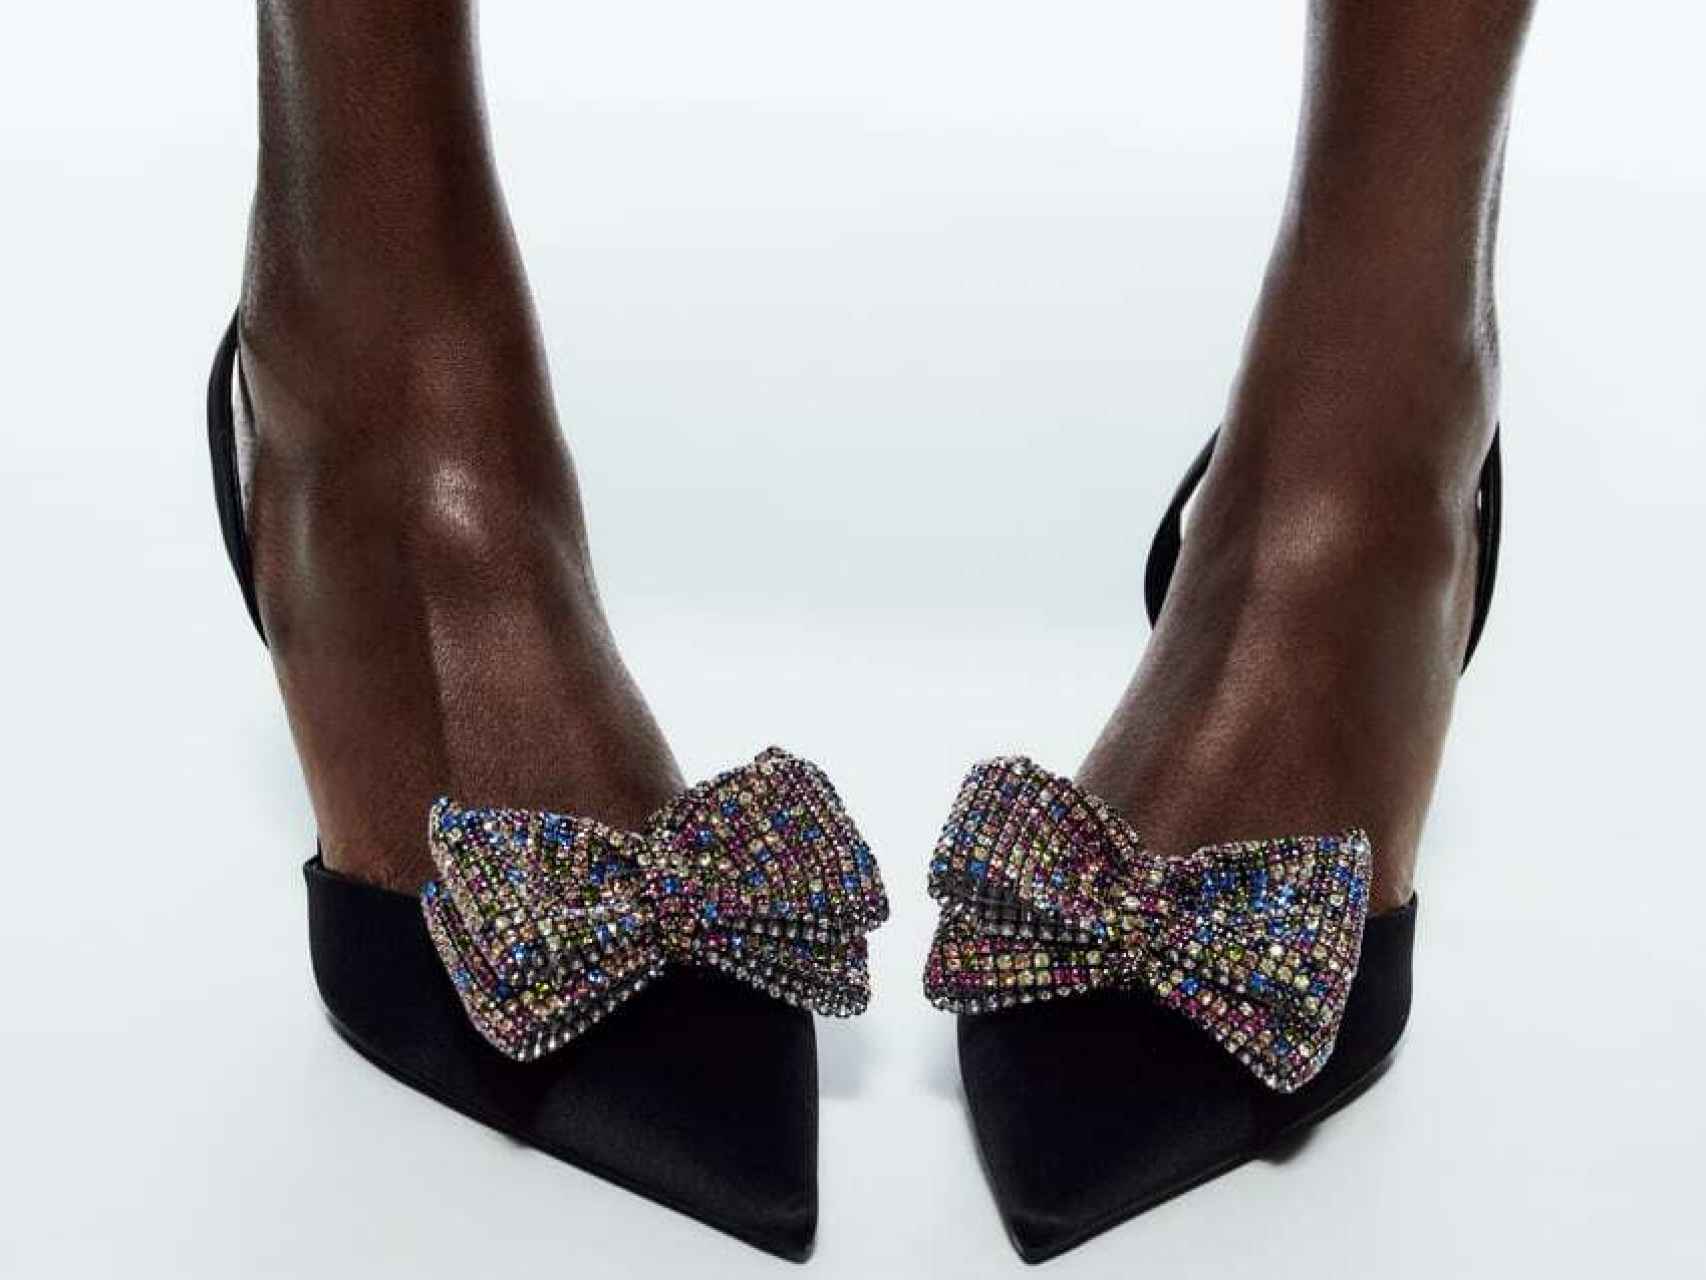 Zapatos destalonados con tacón alto y detalle de lazo brillante, de Zara.